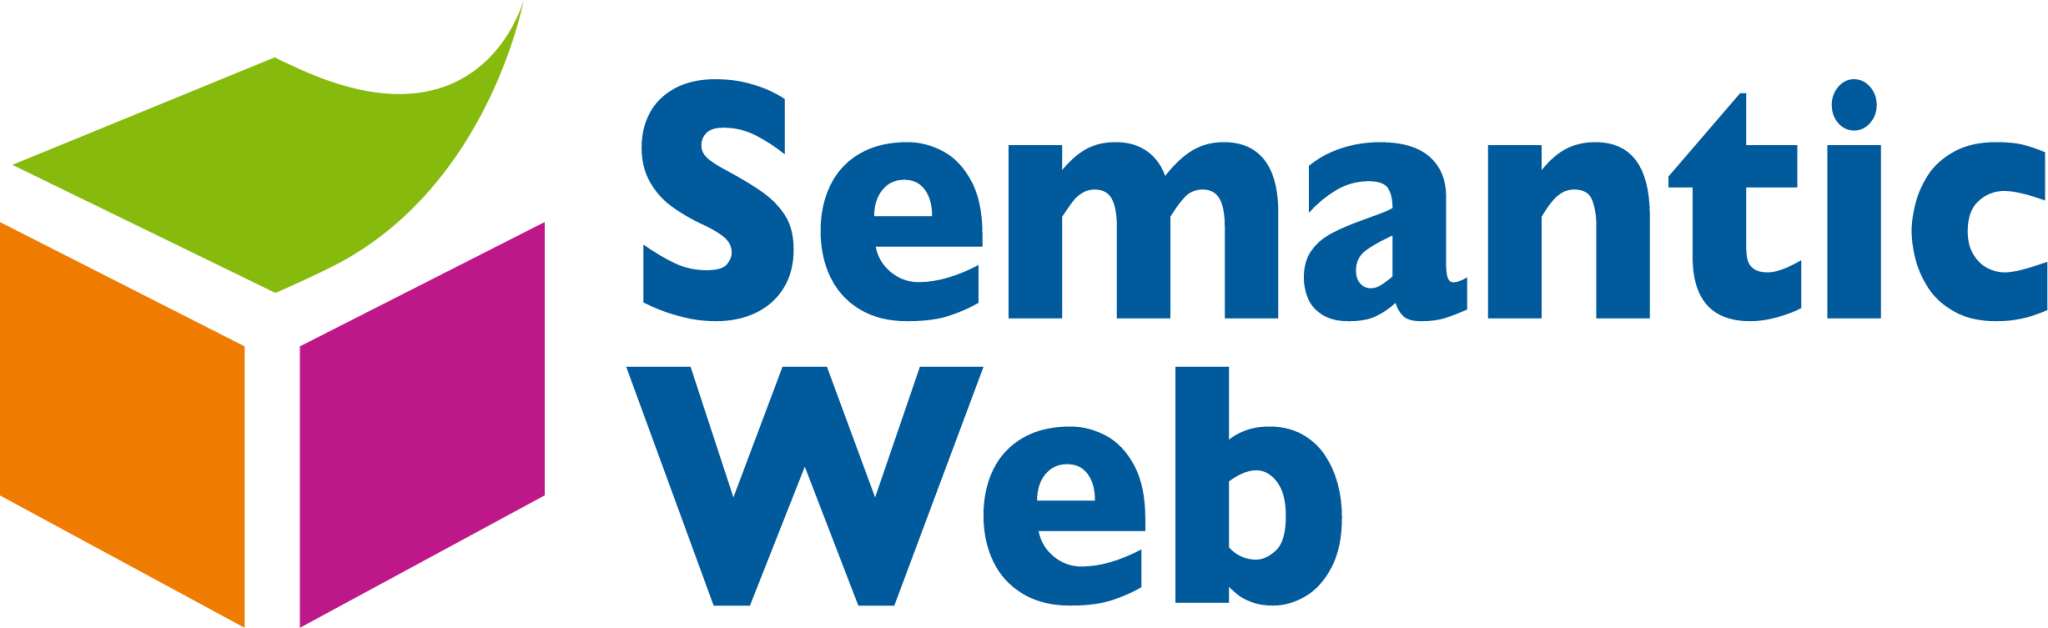 semantic web icon